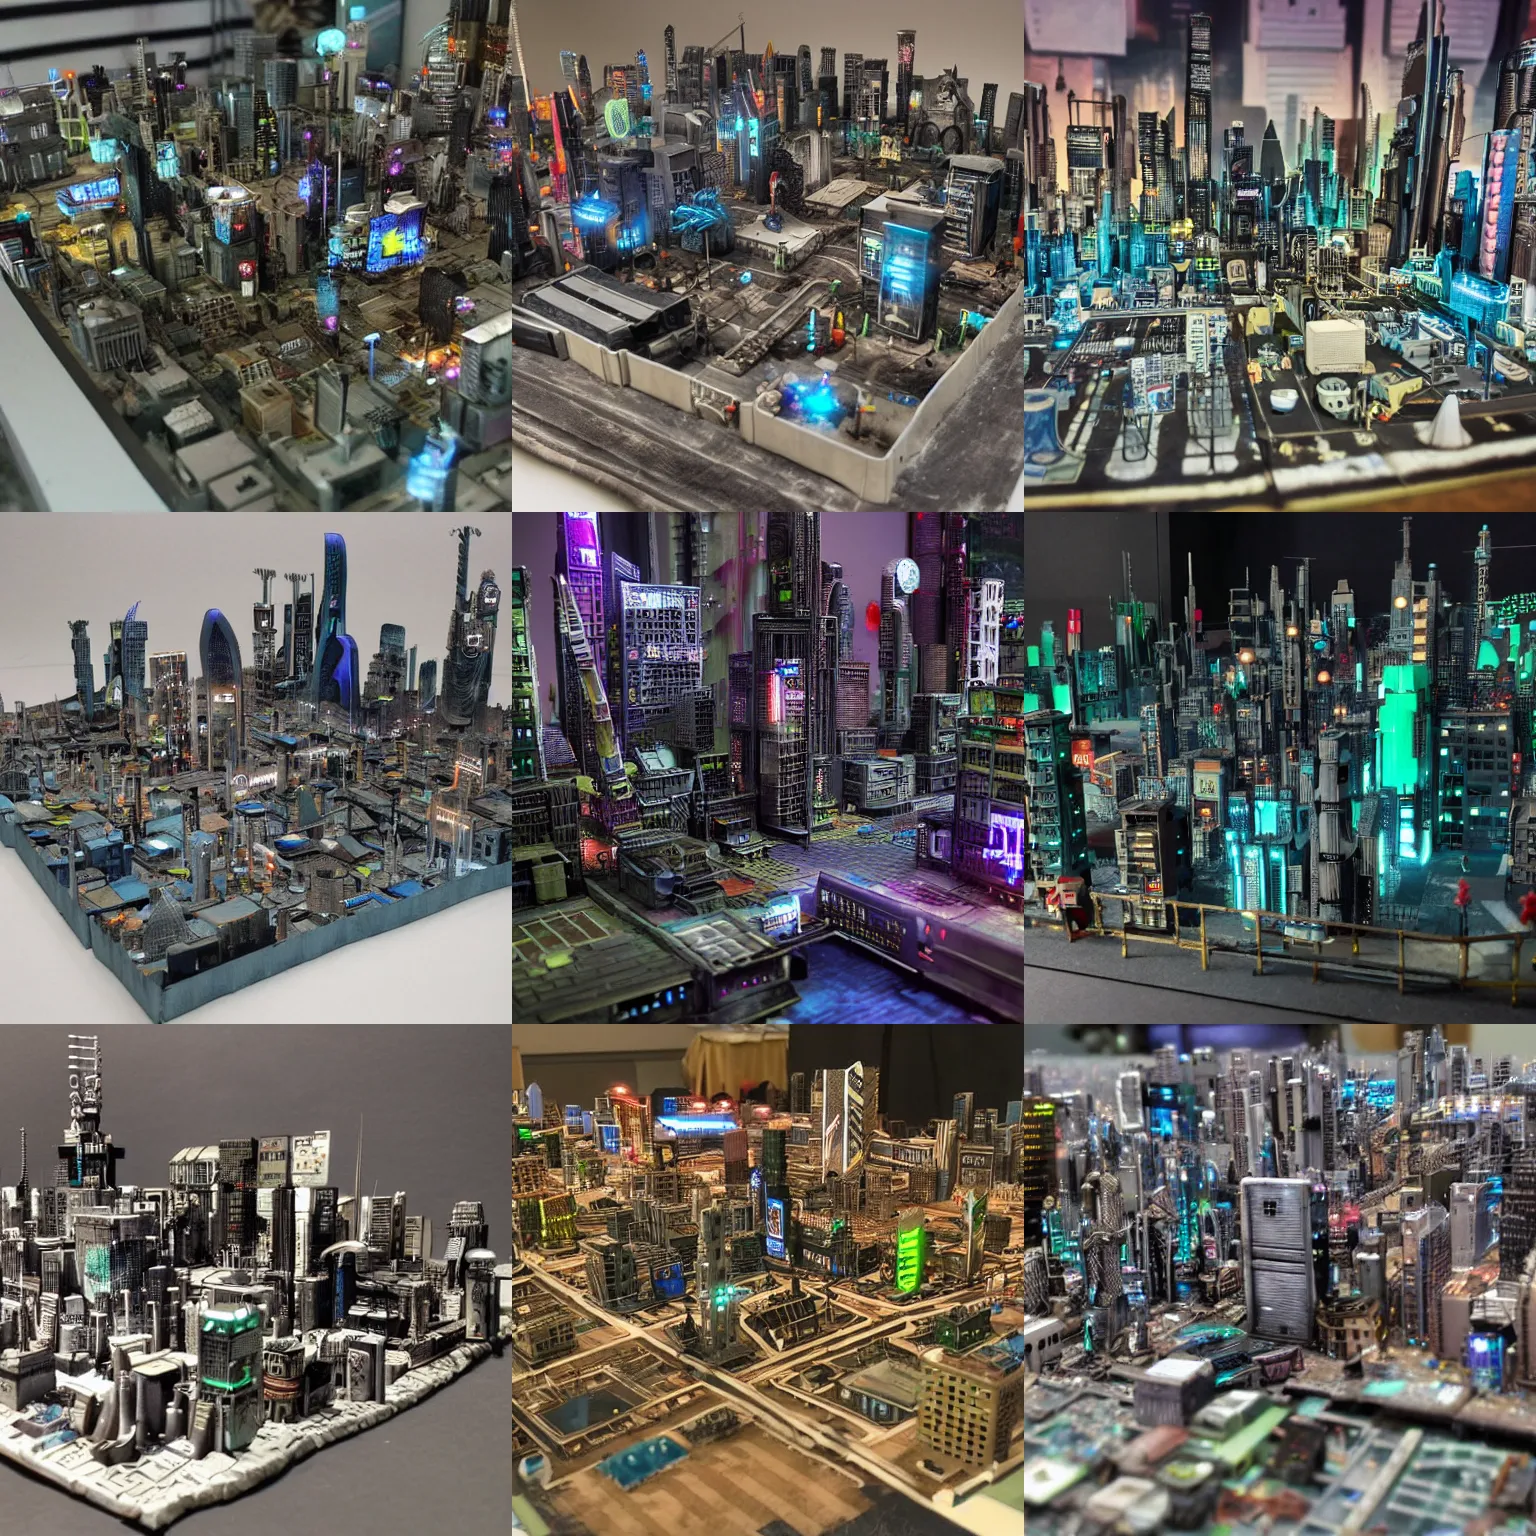 Prompt: miniature model of a cyberpunk city